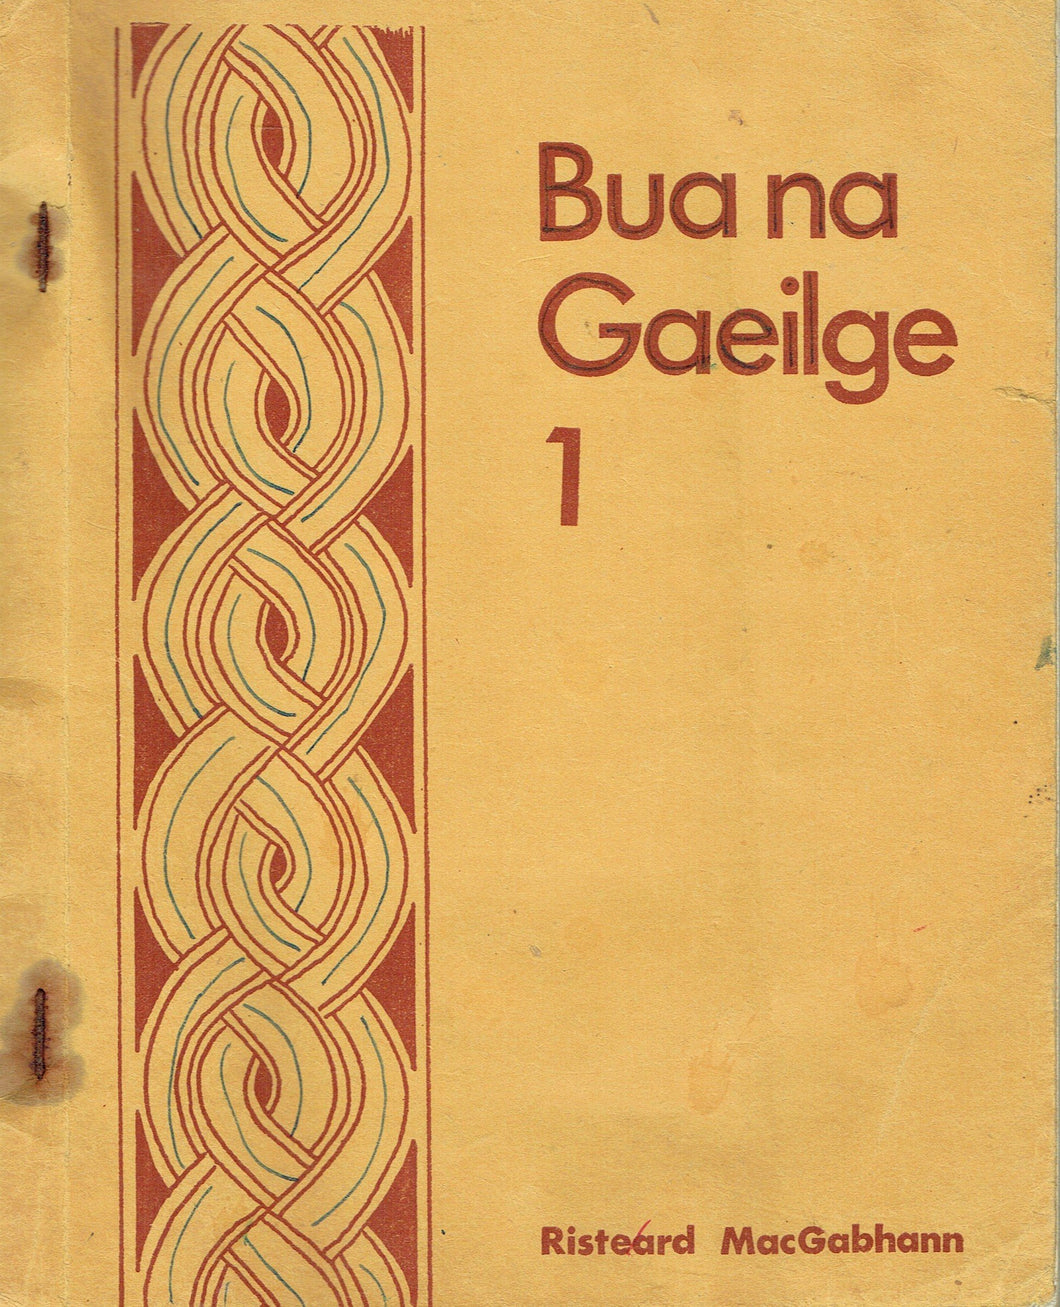 Bua na Gaeilge 1